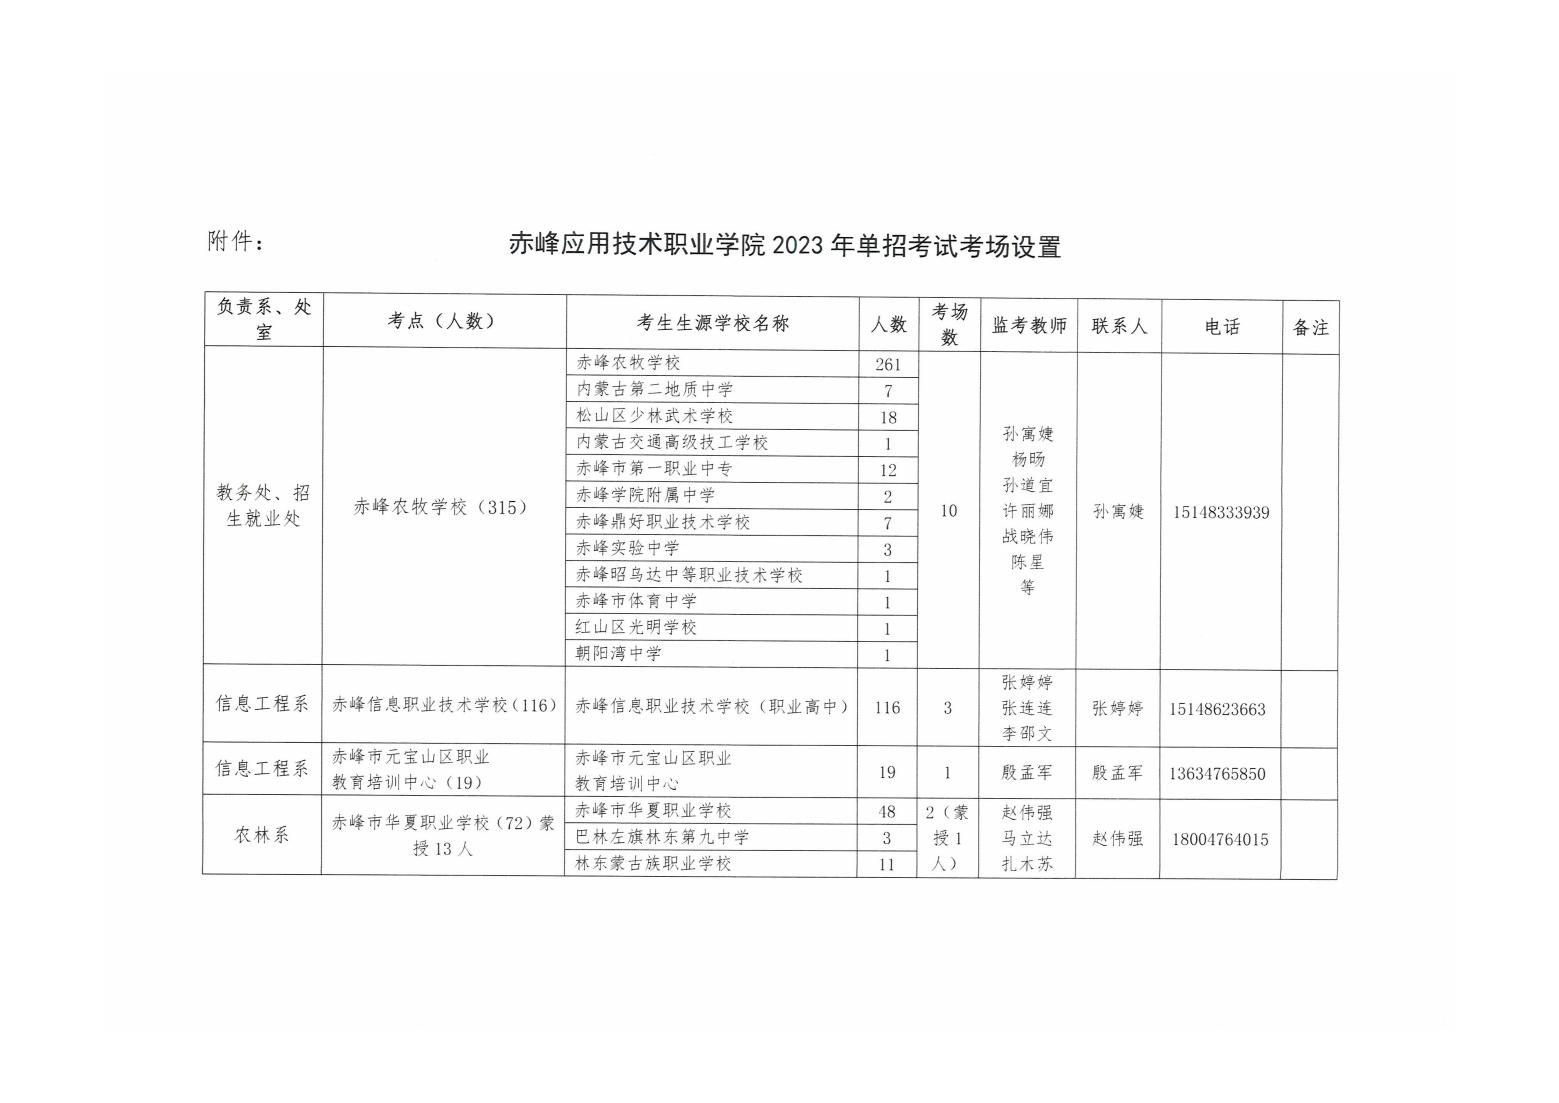 赤峰应用技术职业学院2023年单独招生考试工作方案_04.jpg